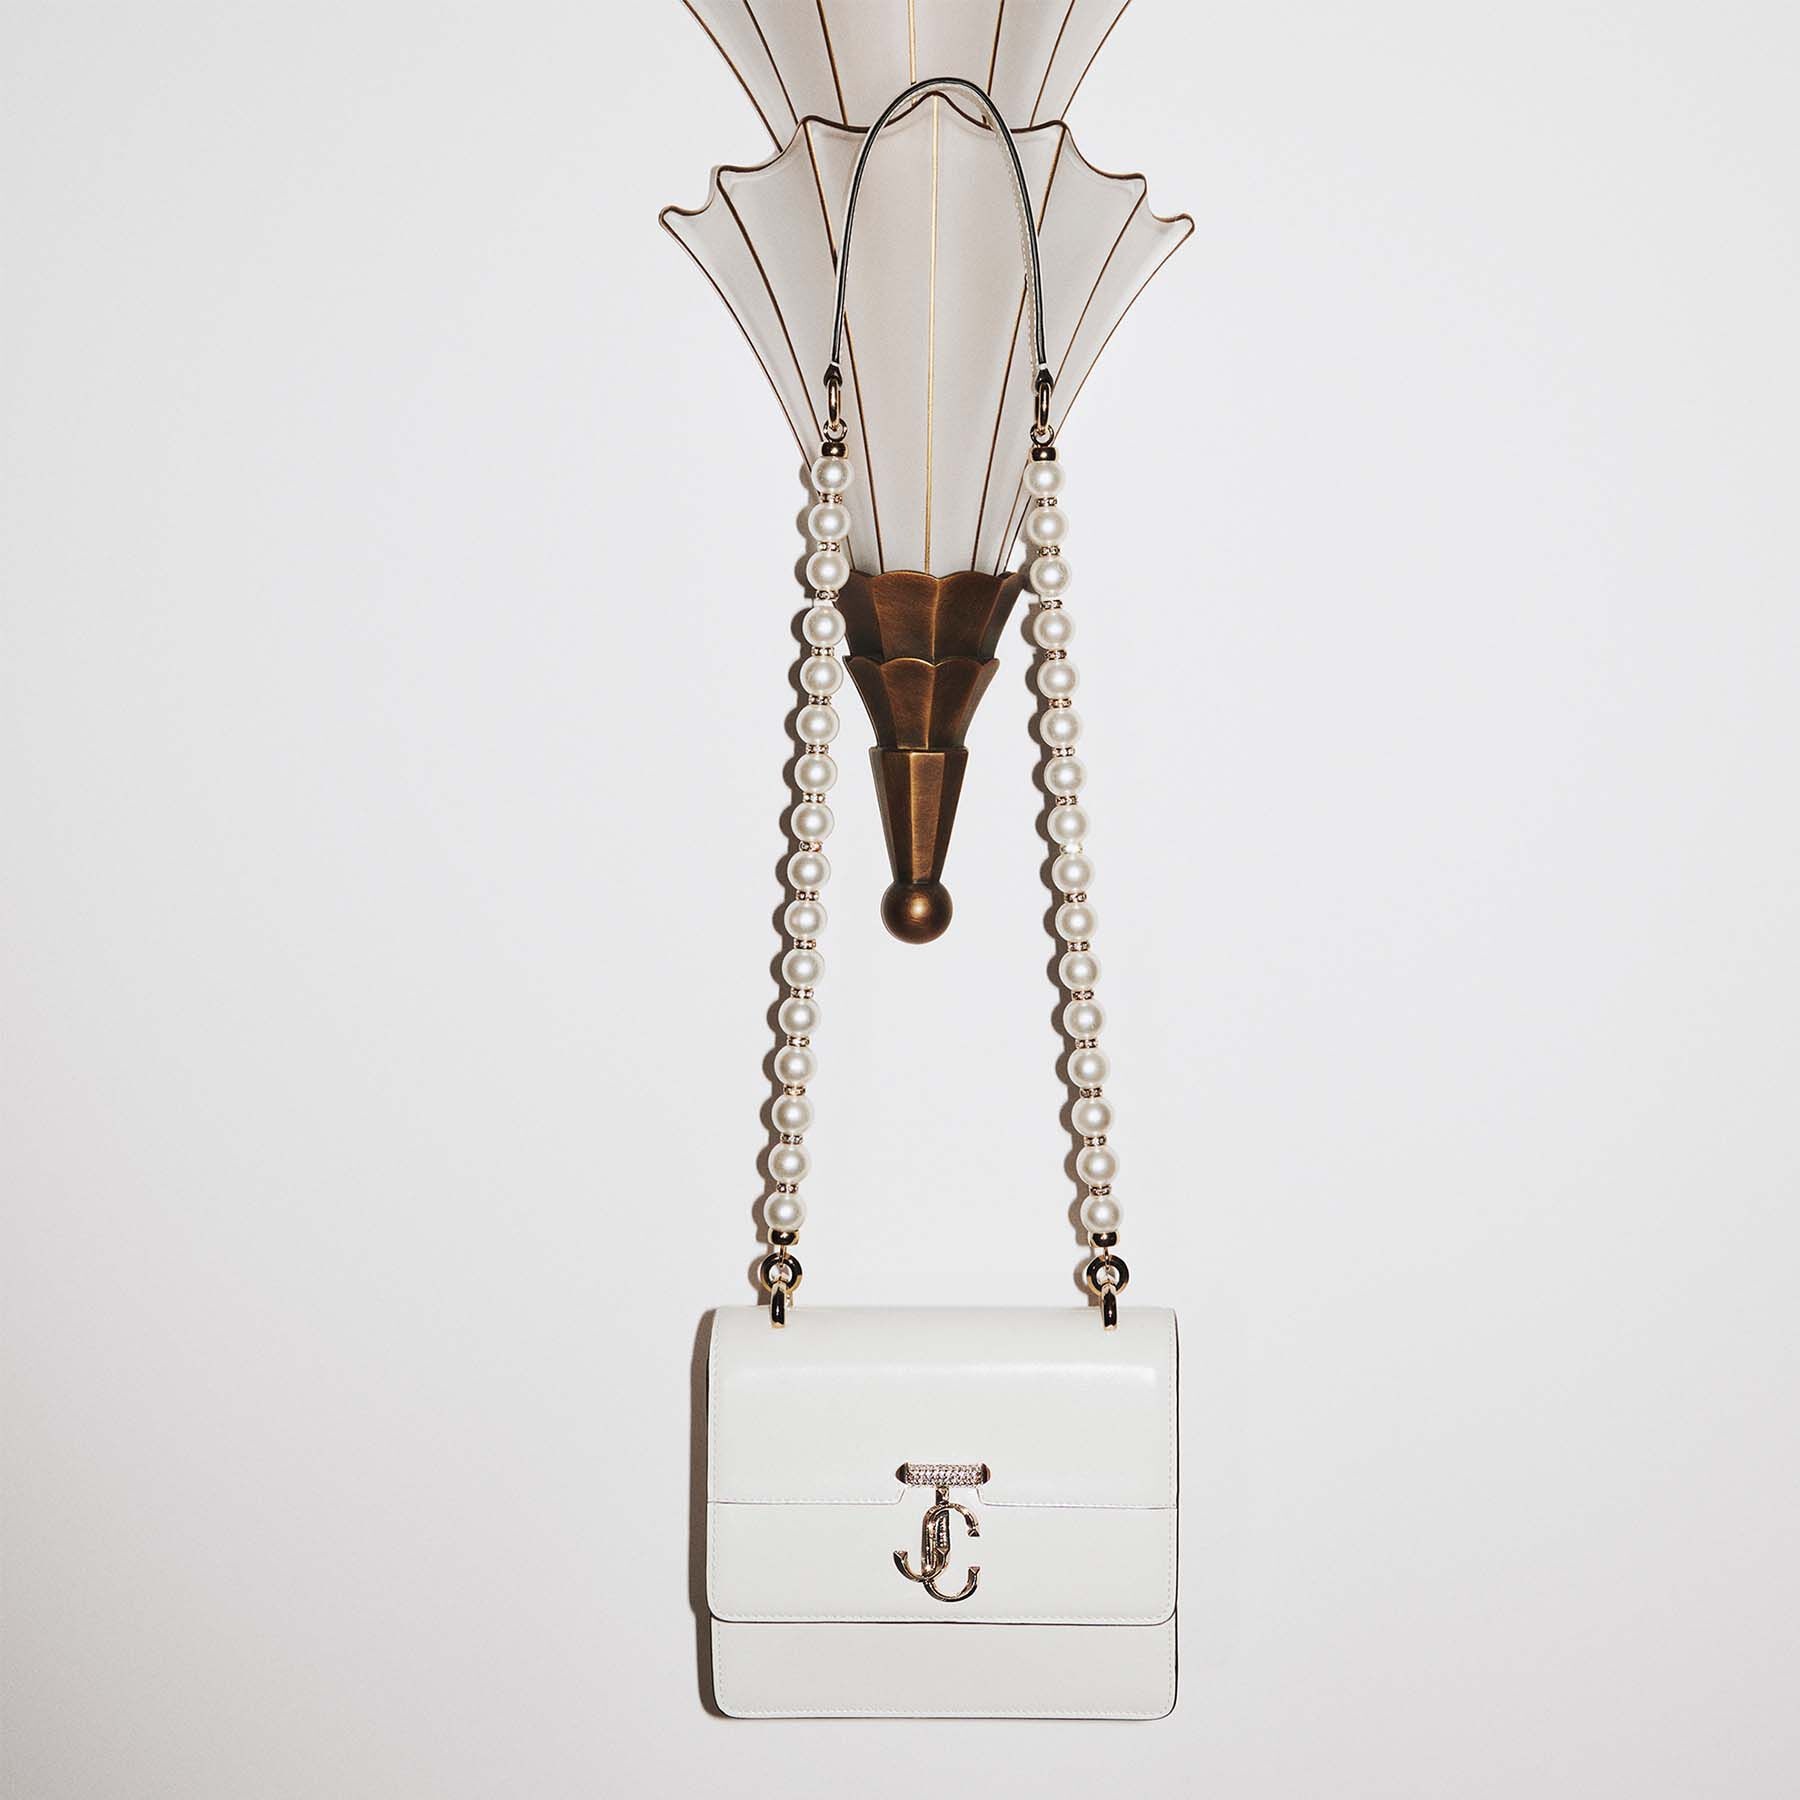 Varenne Quad XS
Latte Leather Shoulder Bag with Pearl Strap - 8